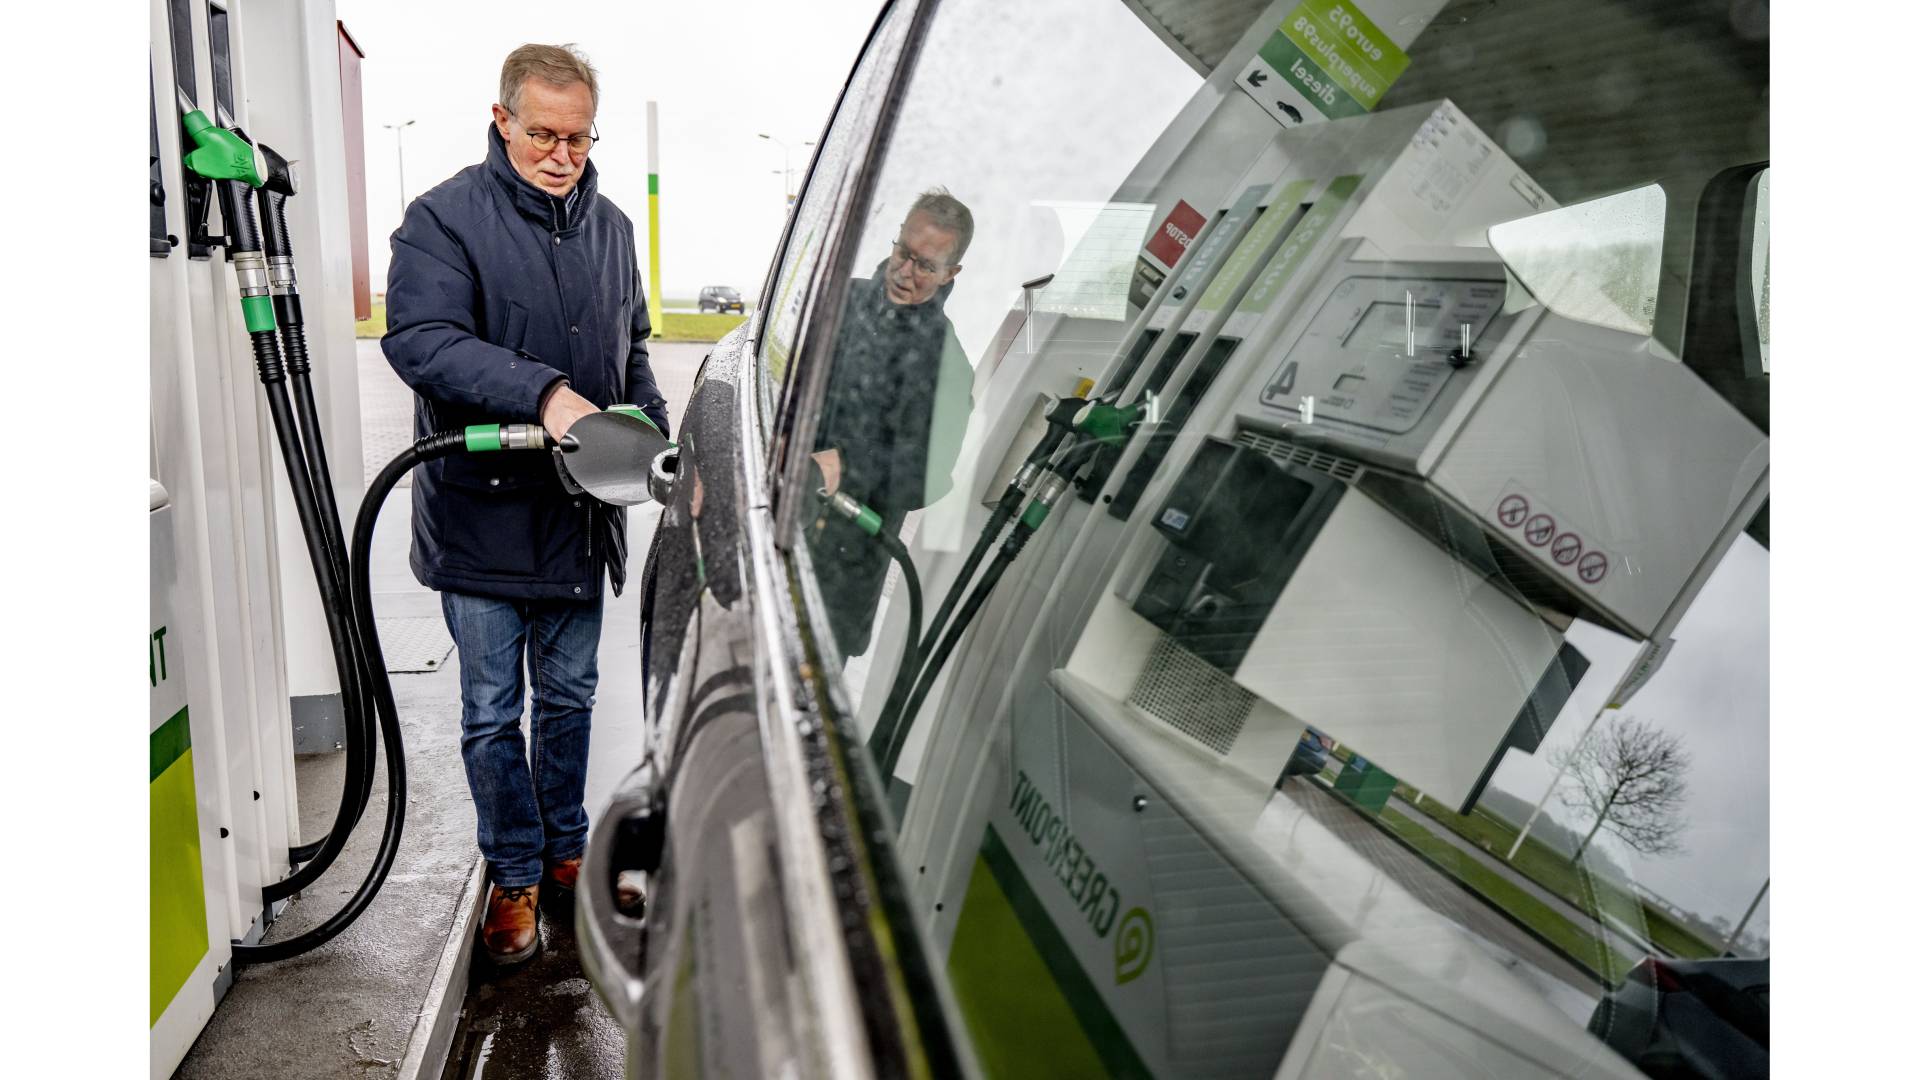 إرتفاع جديد في اسعار الوقود، ومن المتوقع وصول سعر البنزين فوق 2.41 يورو